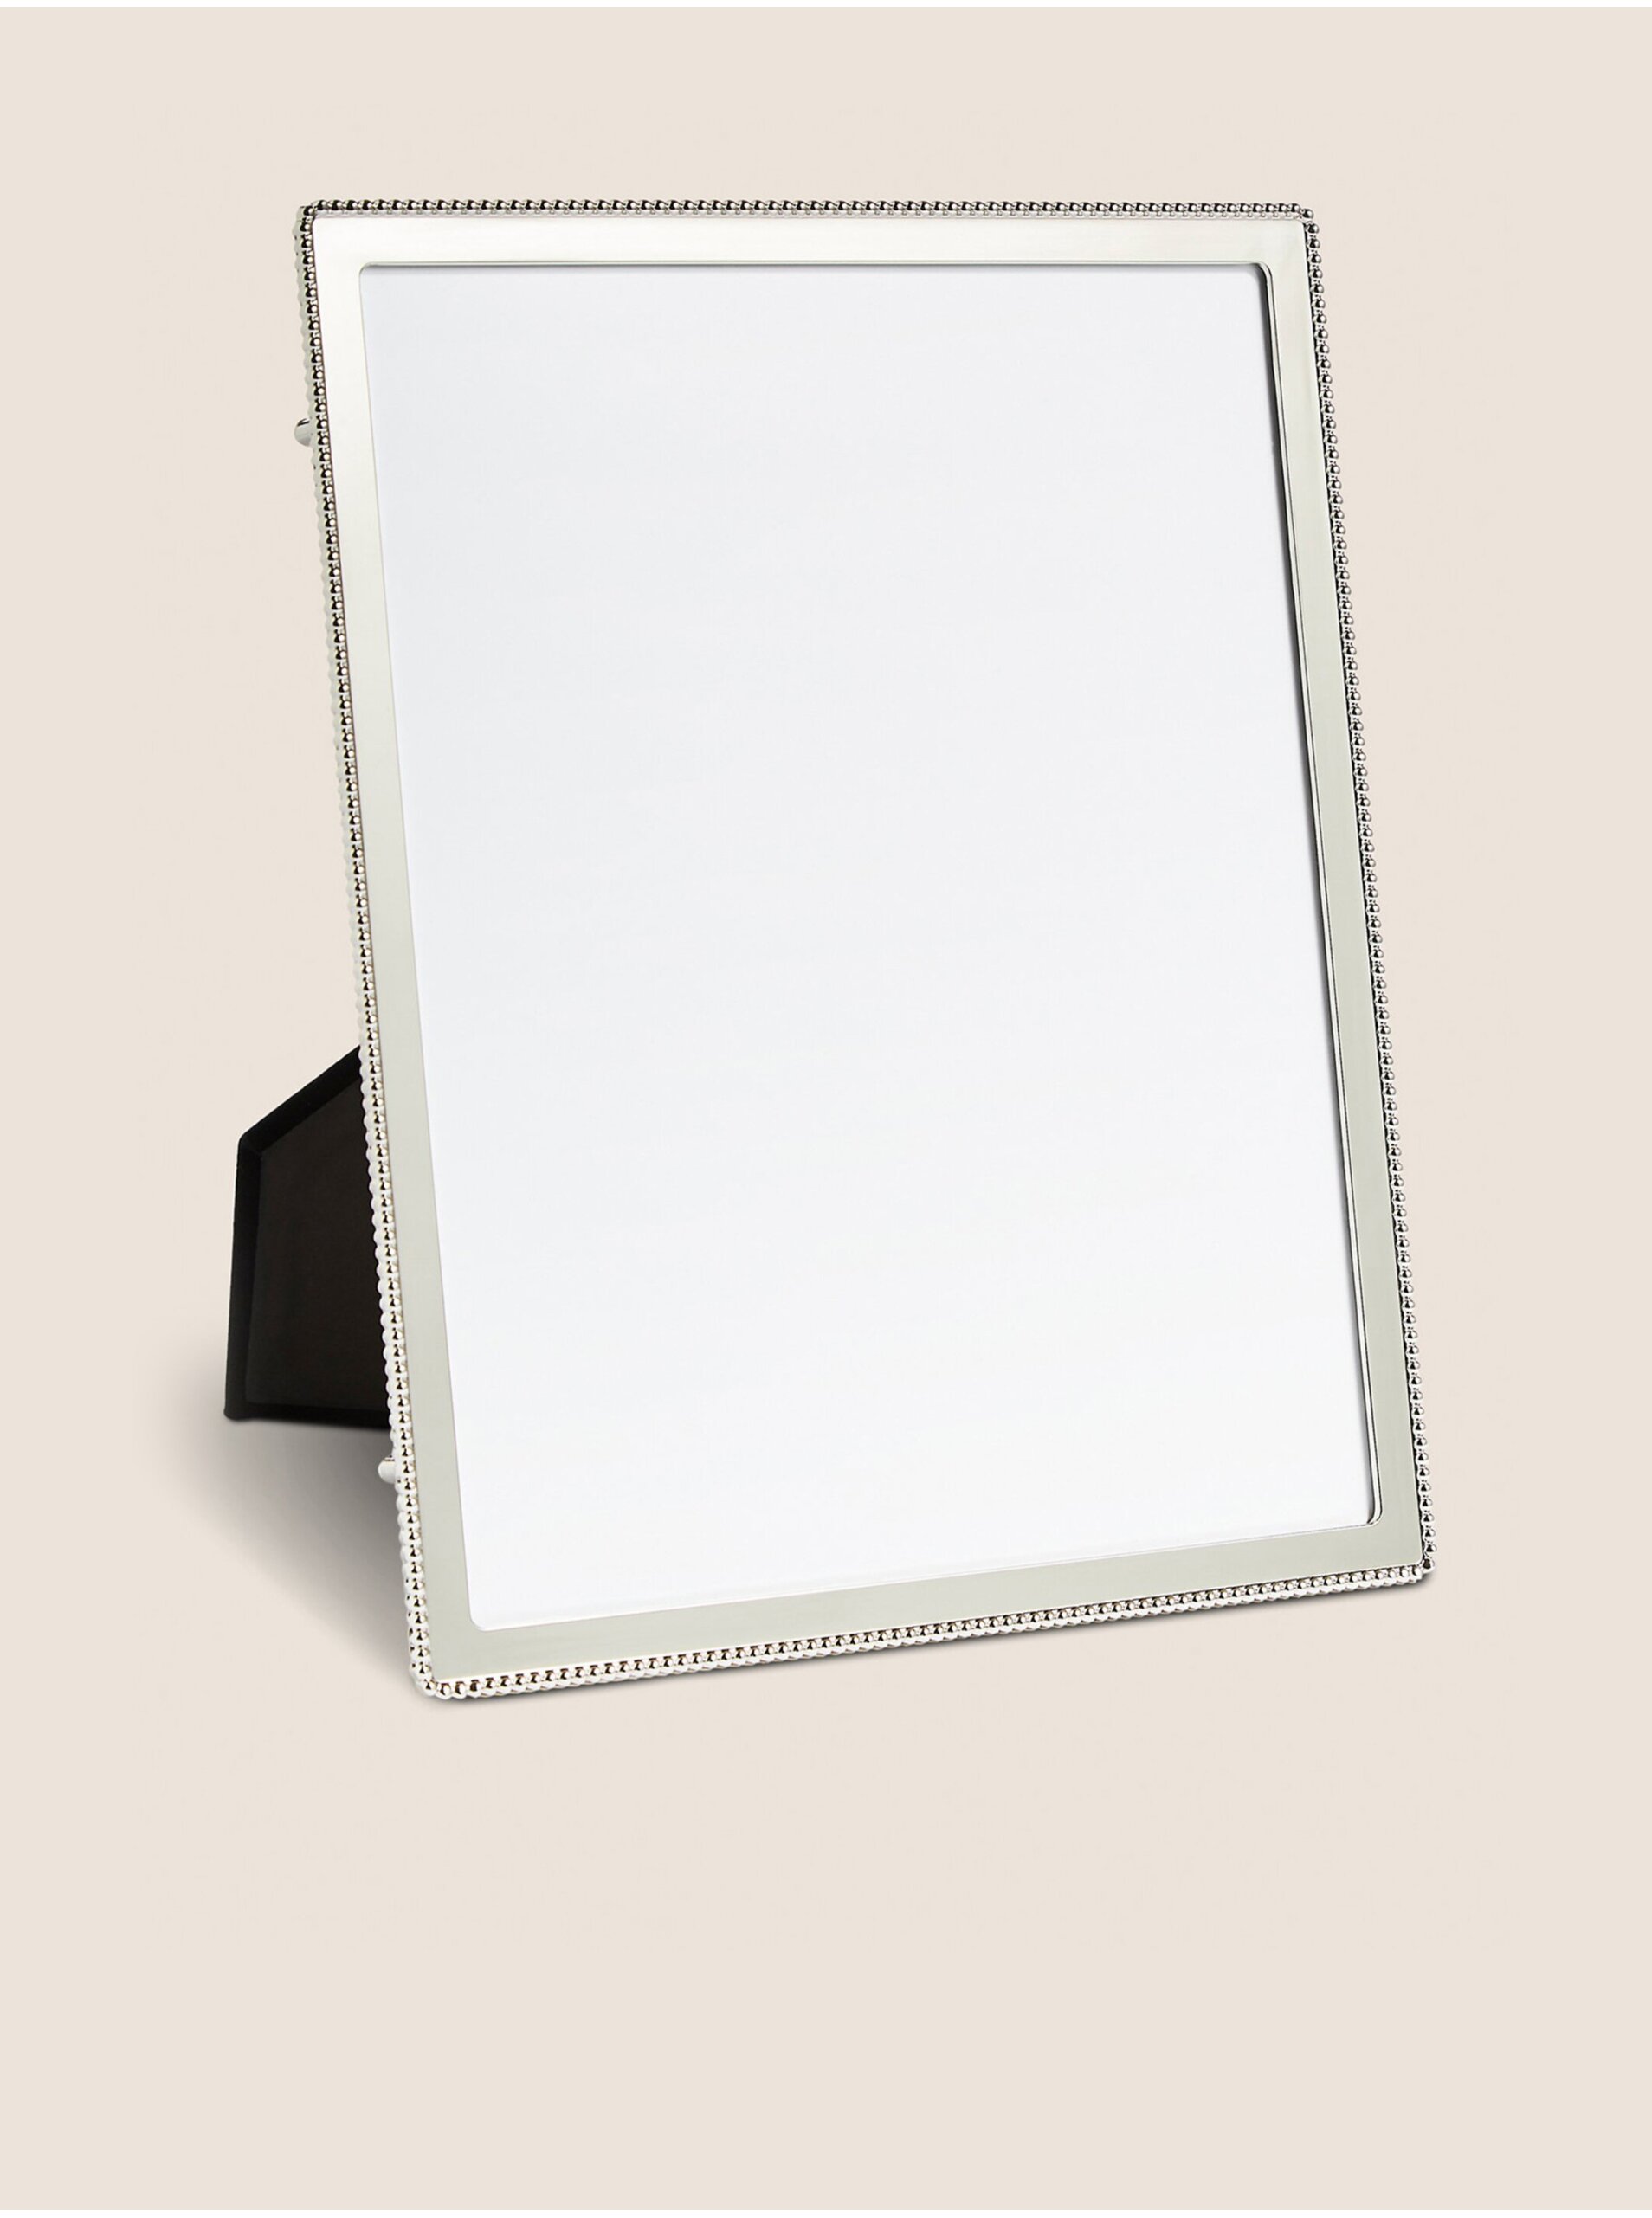 Lacno Fotorámik v striebornej farbe 20 x 25 cm Marks & Spencer Emelie